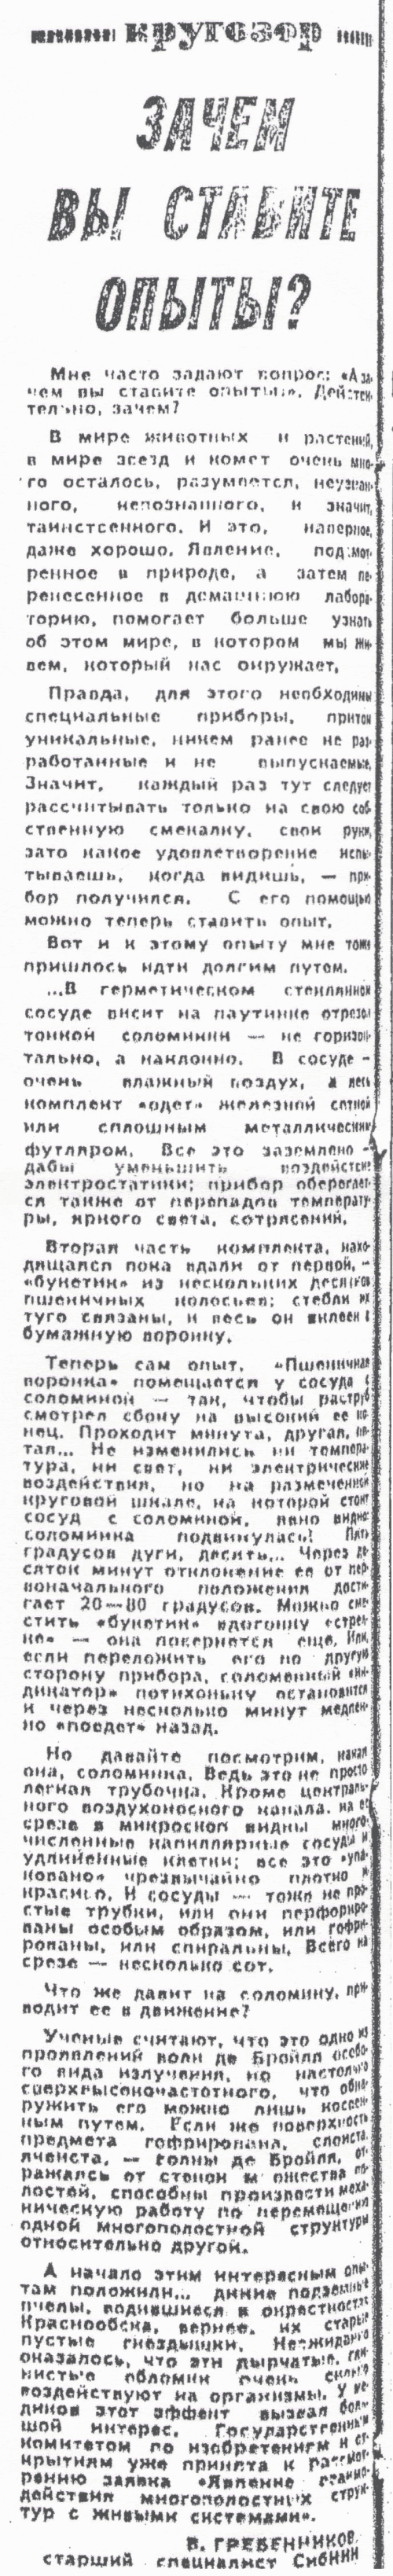 Зачем вы ставите опыты. В.С. Гребенников. Вечерний Новосибирск, 23.10.1985.